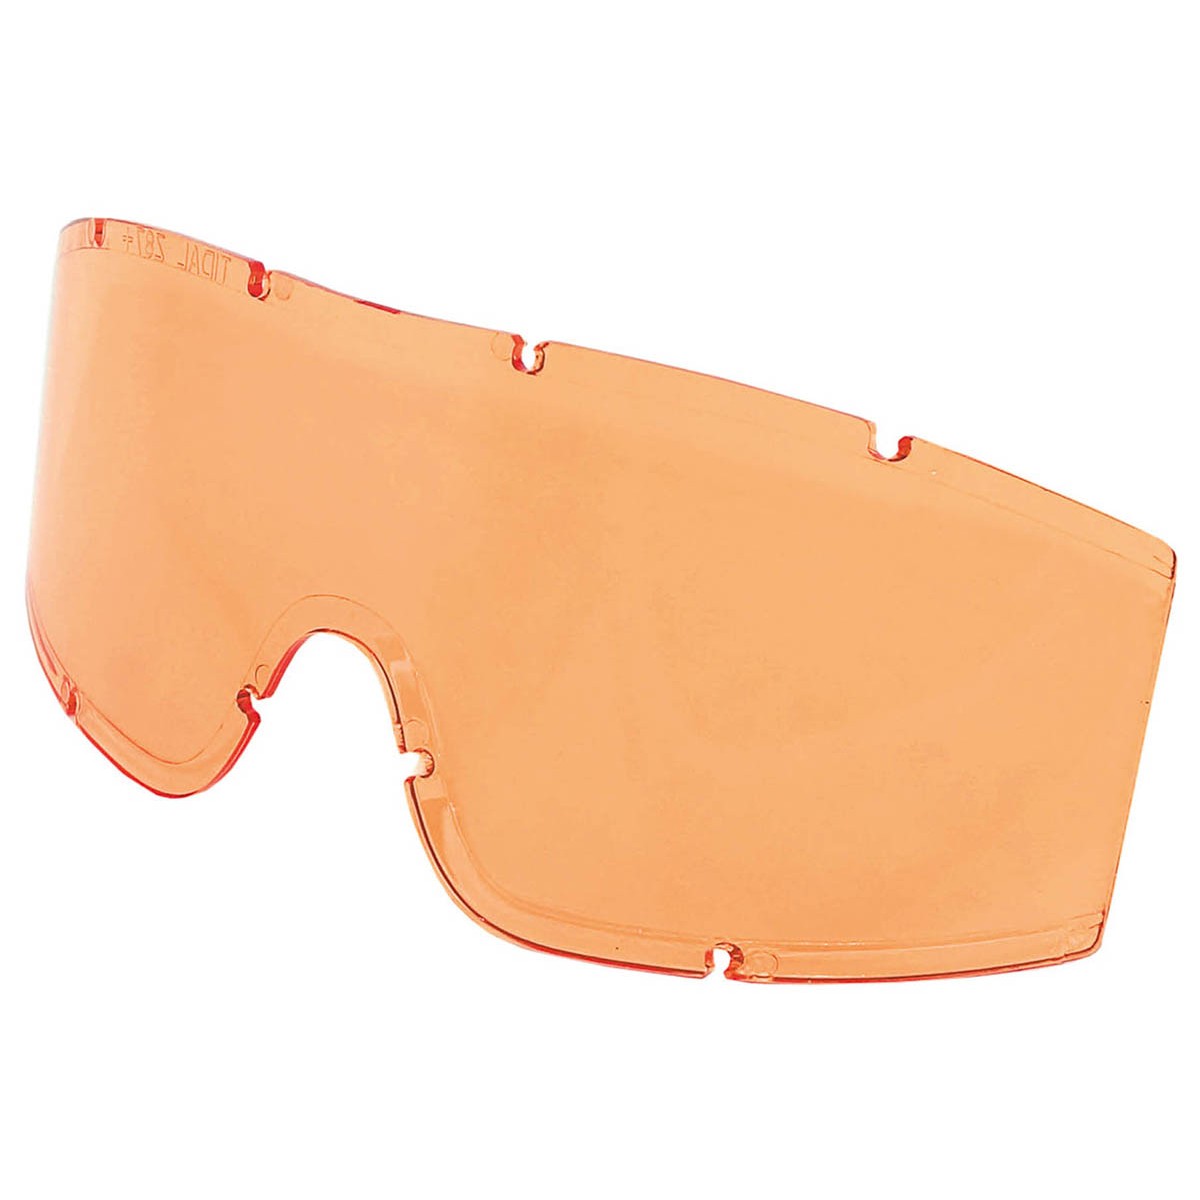 Náhradní skla pro taktické brýle KHS Tactical - oranžové